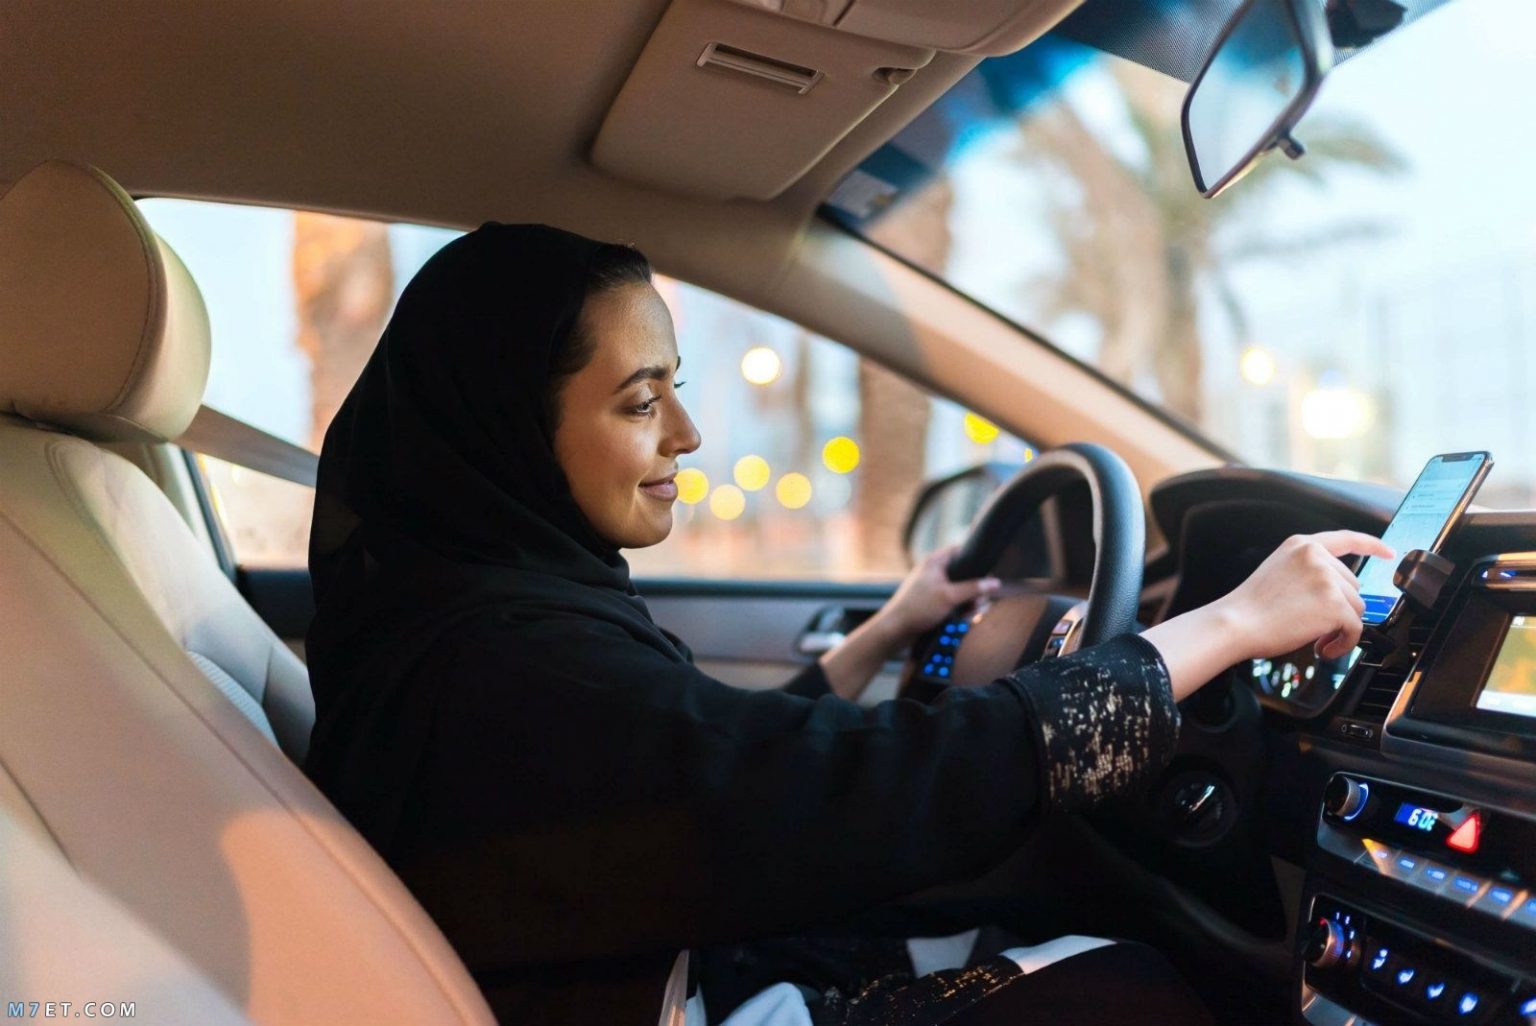 الأوراق المطلوبة لاستخراج رخصة القيادة للنساء ورسوم التدريب سعودية نيوز